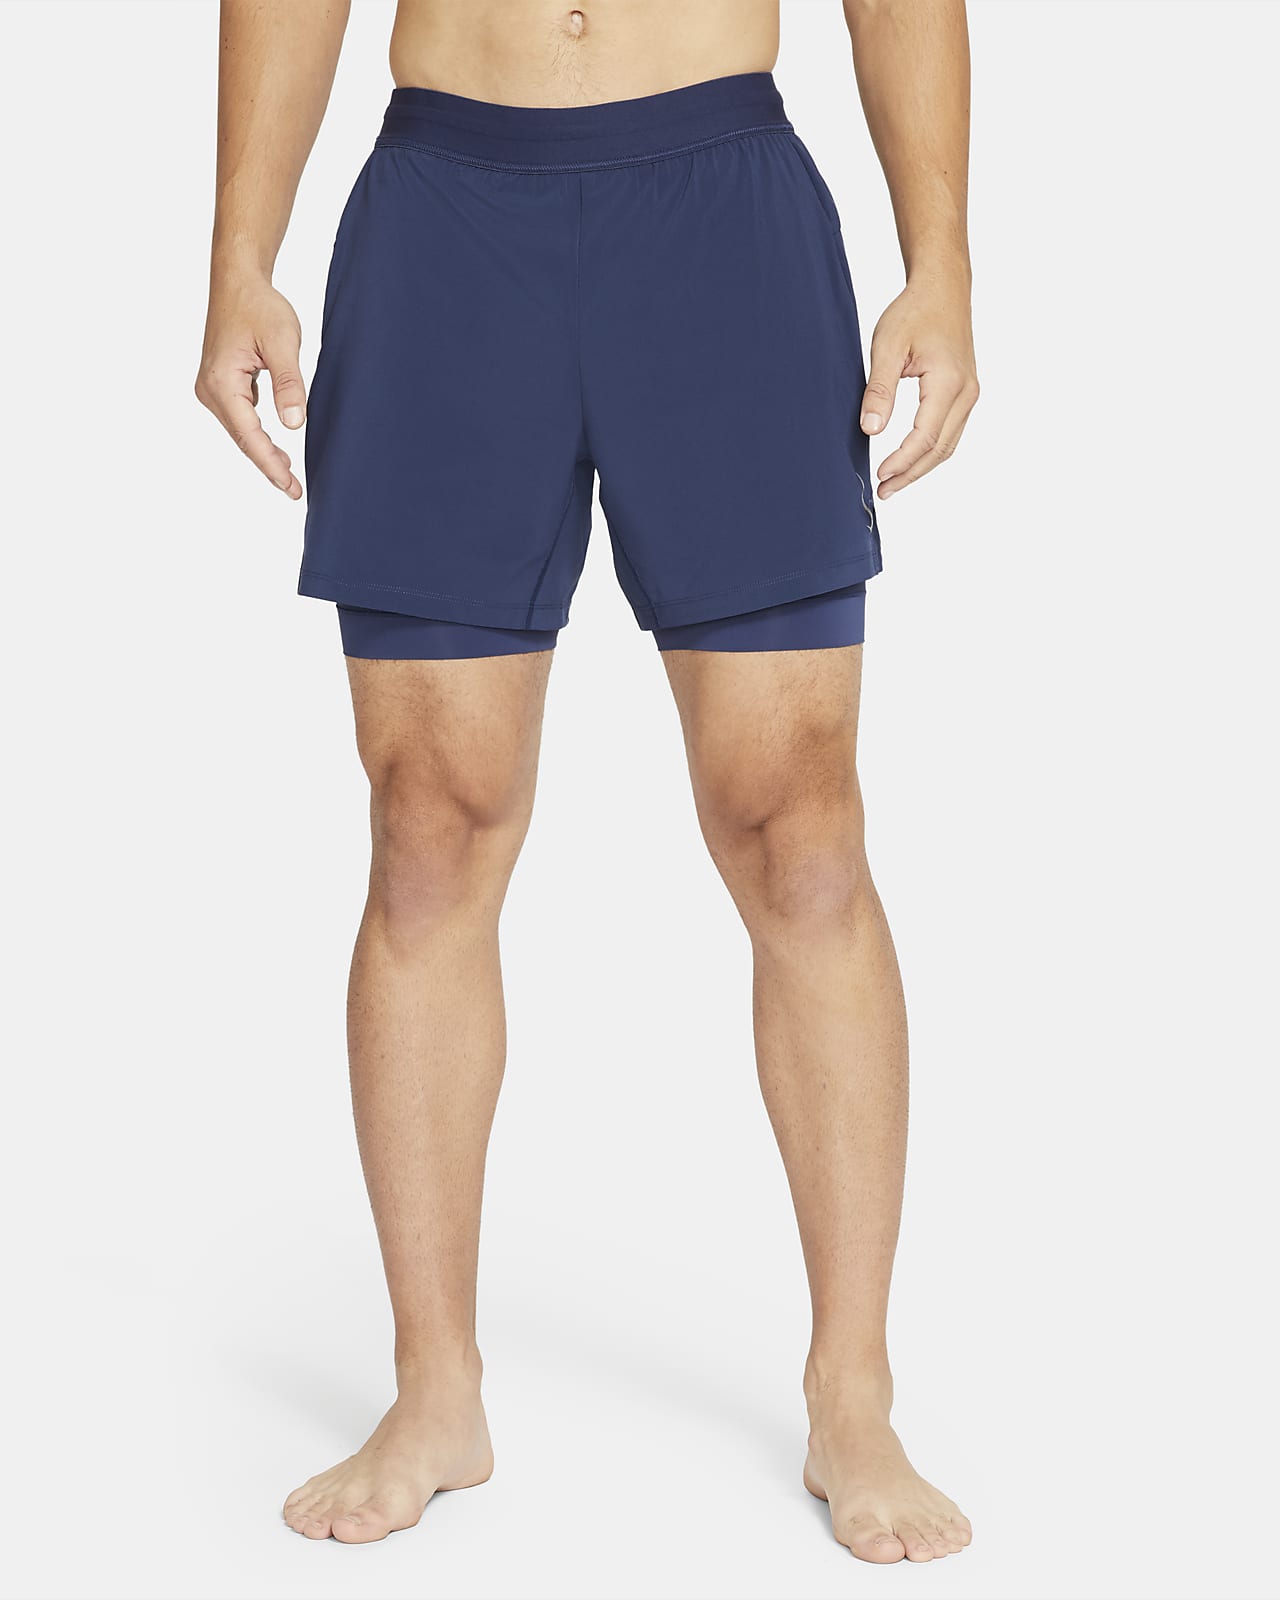 Nike Yoga Men's 2-in-1 Shorts